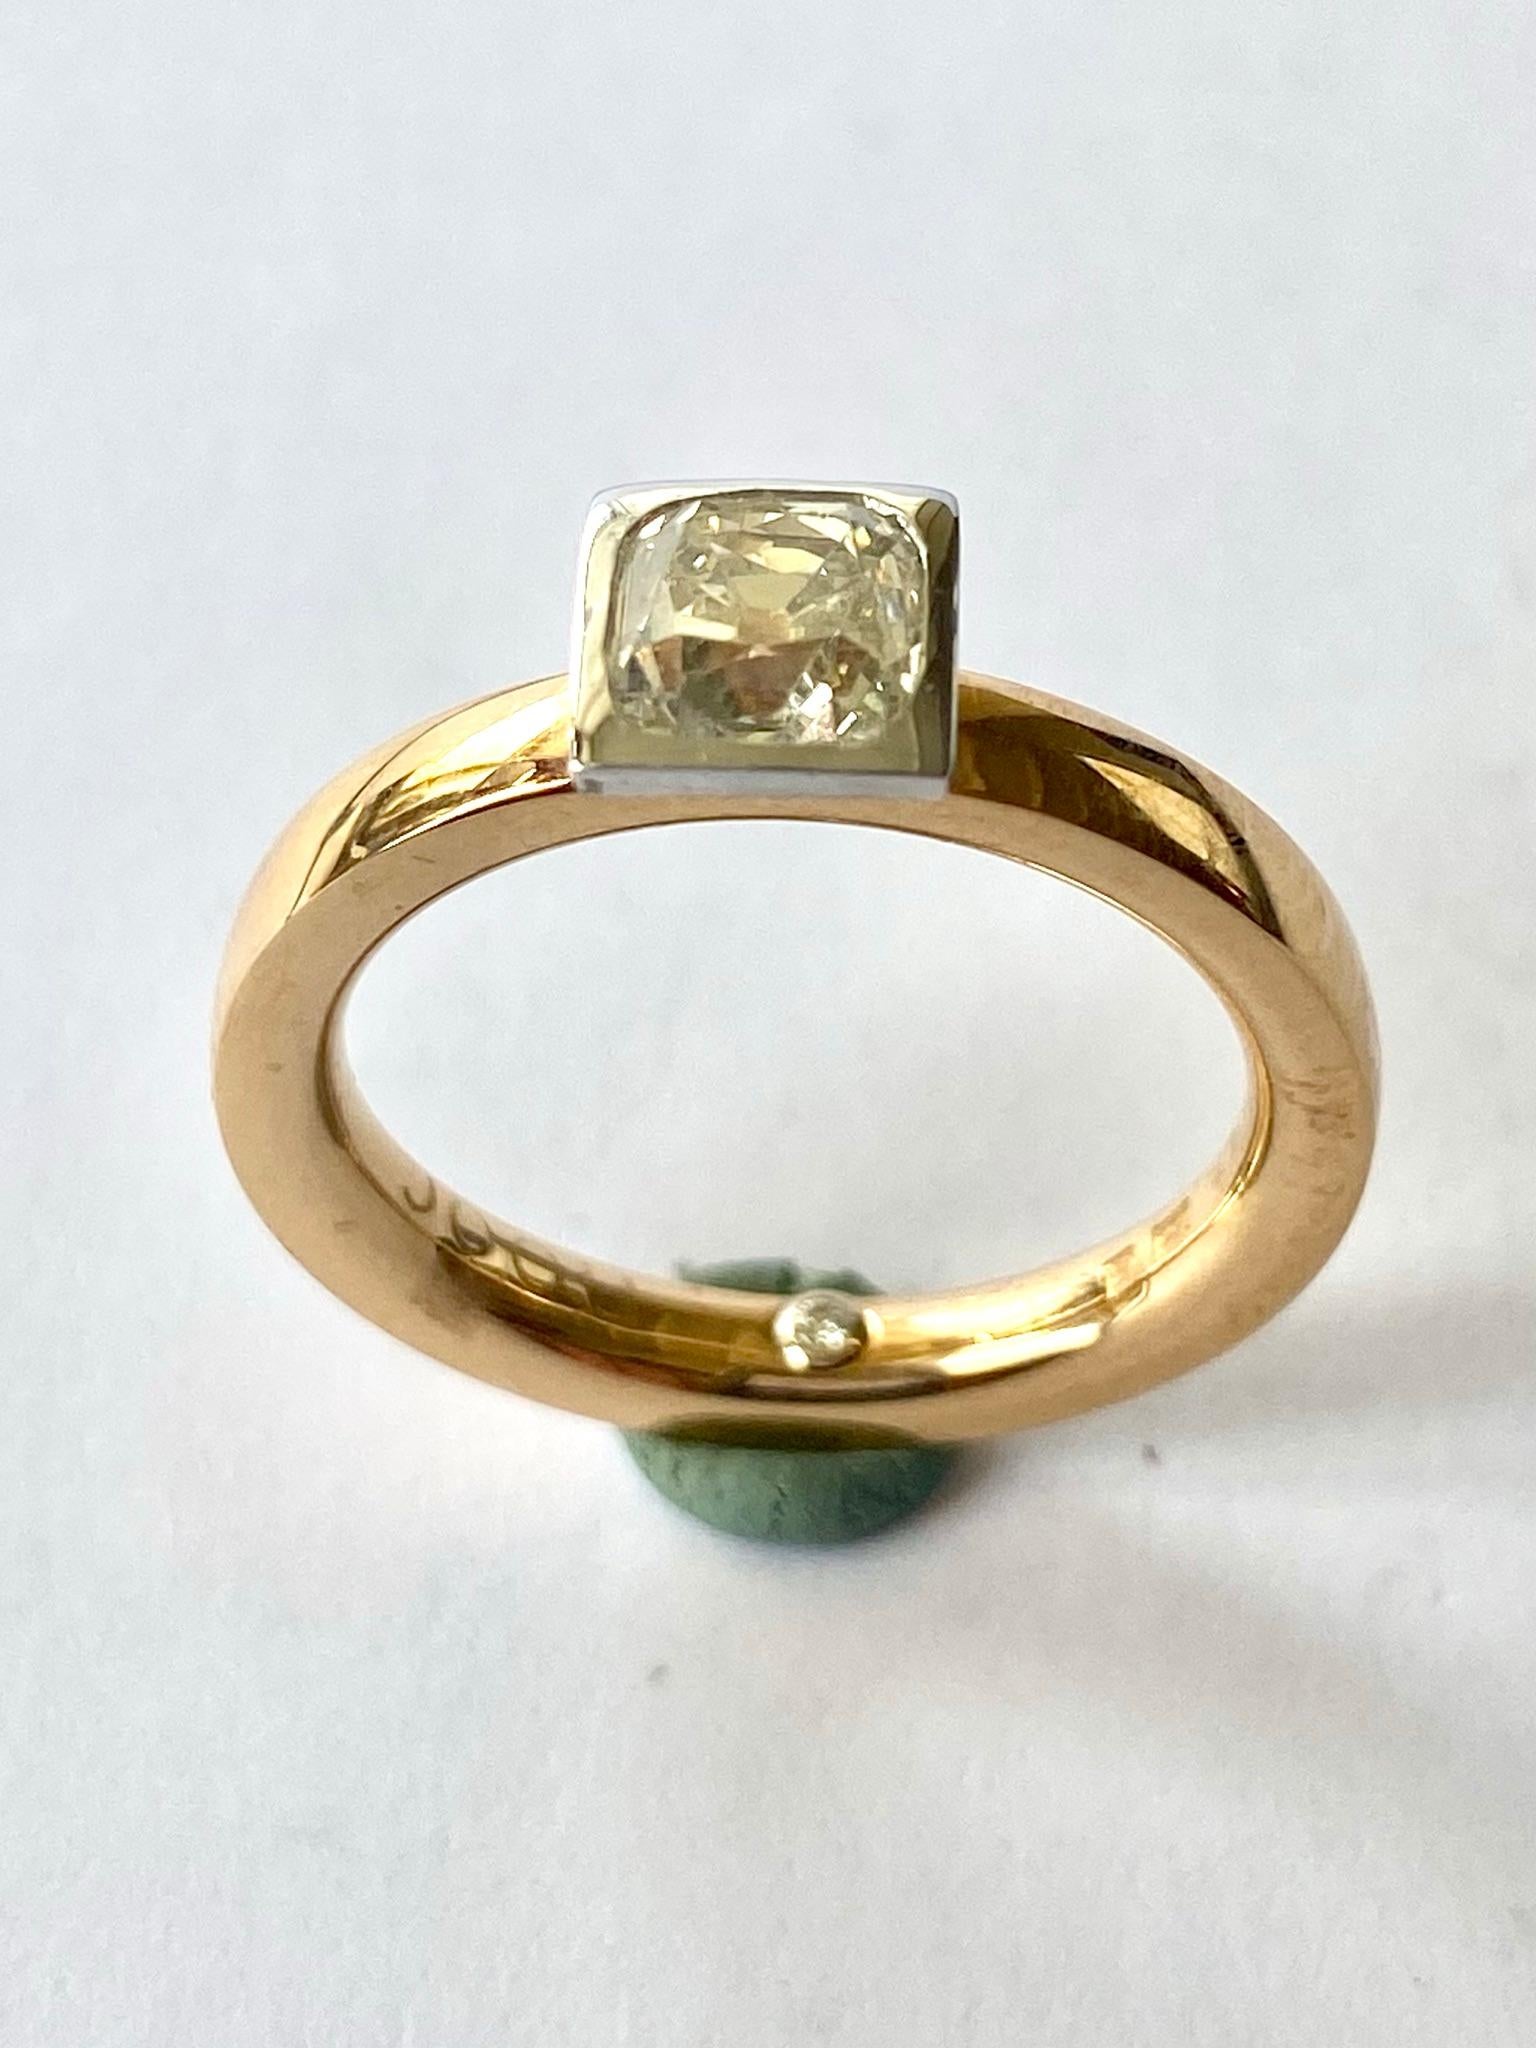 One (1) 18 Karat Rose and White Gold Ring, Stamped 